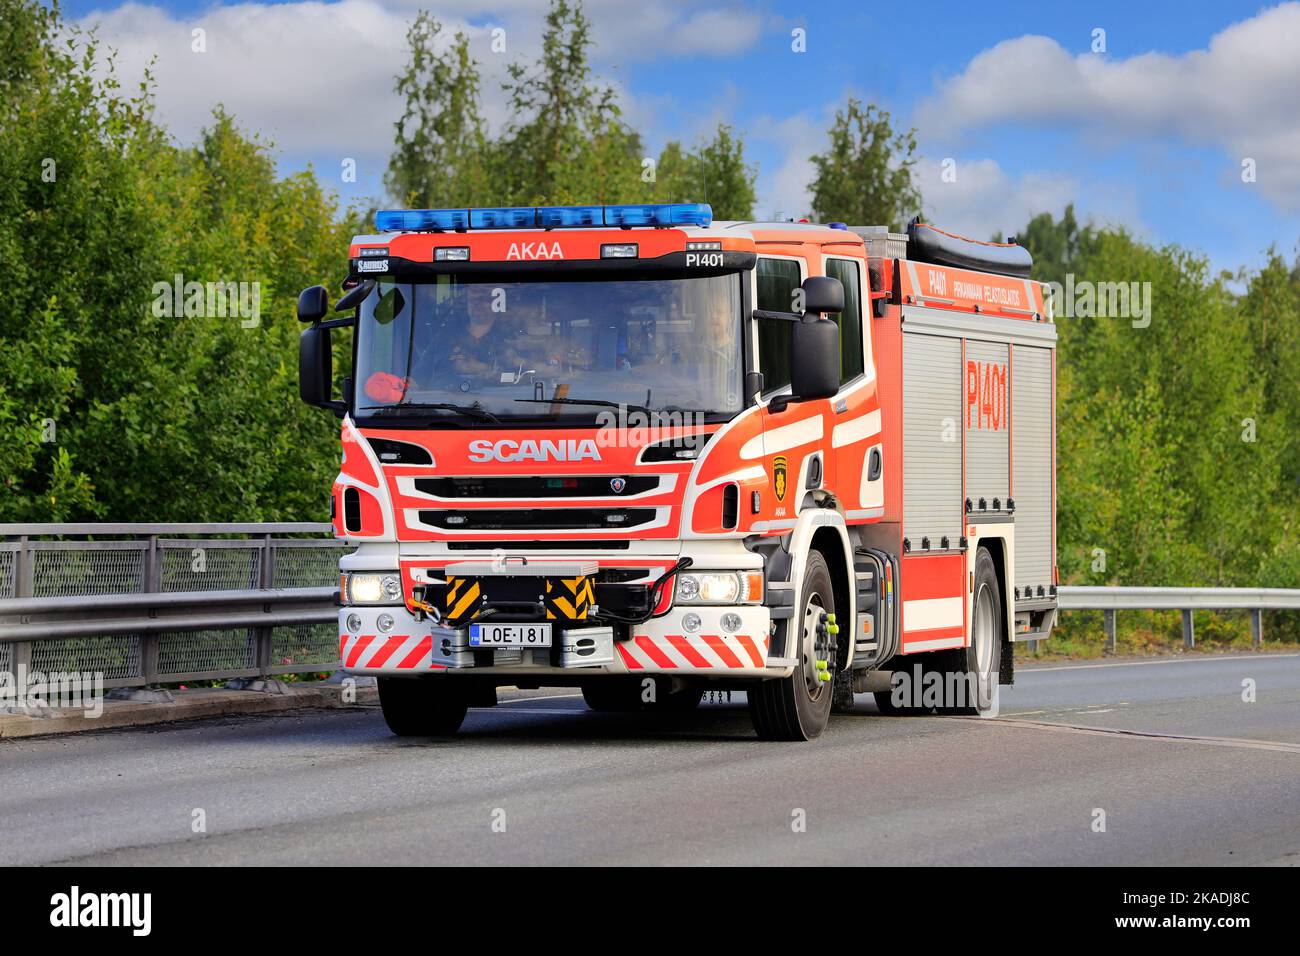 Scania Saurus Fire Engine of Pirkanmaa Rescue Department sur la route par un beau jour d'été. Akaa, Finlande. 12 août 2021. Banque D'Images